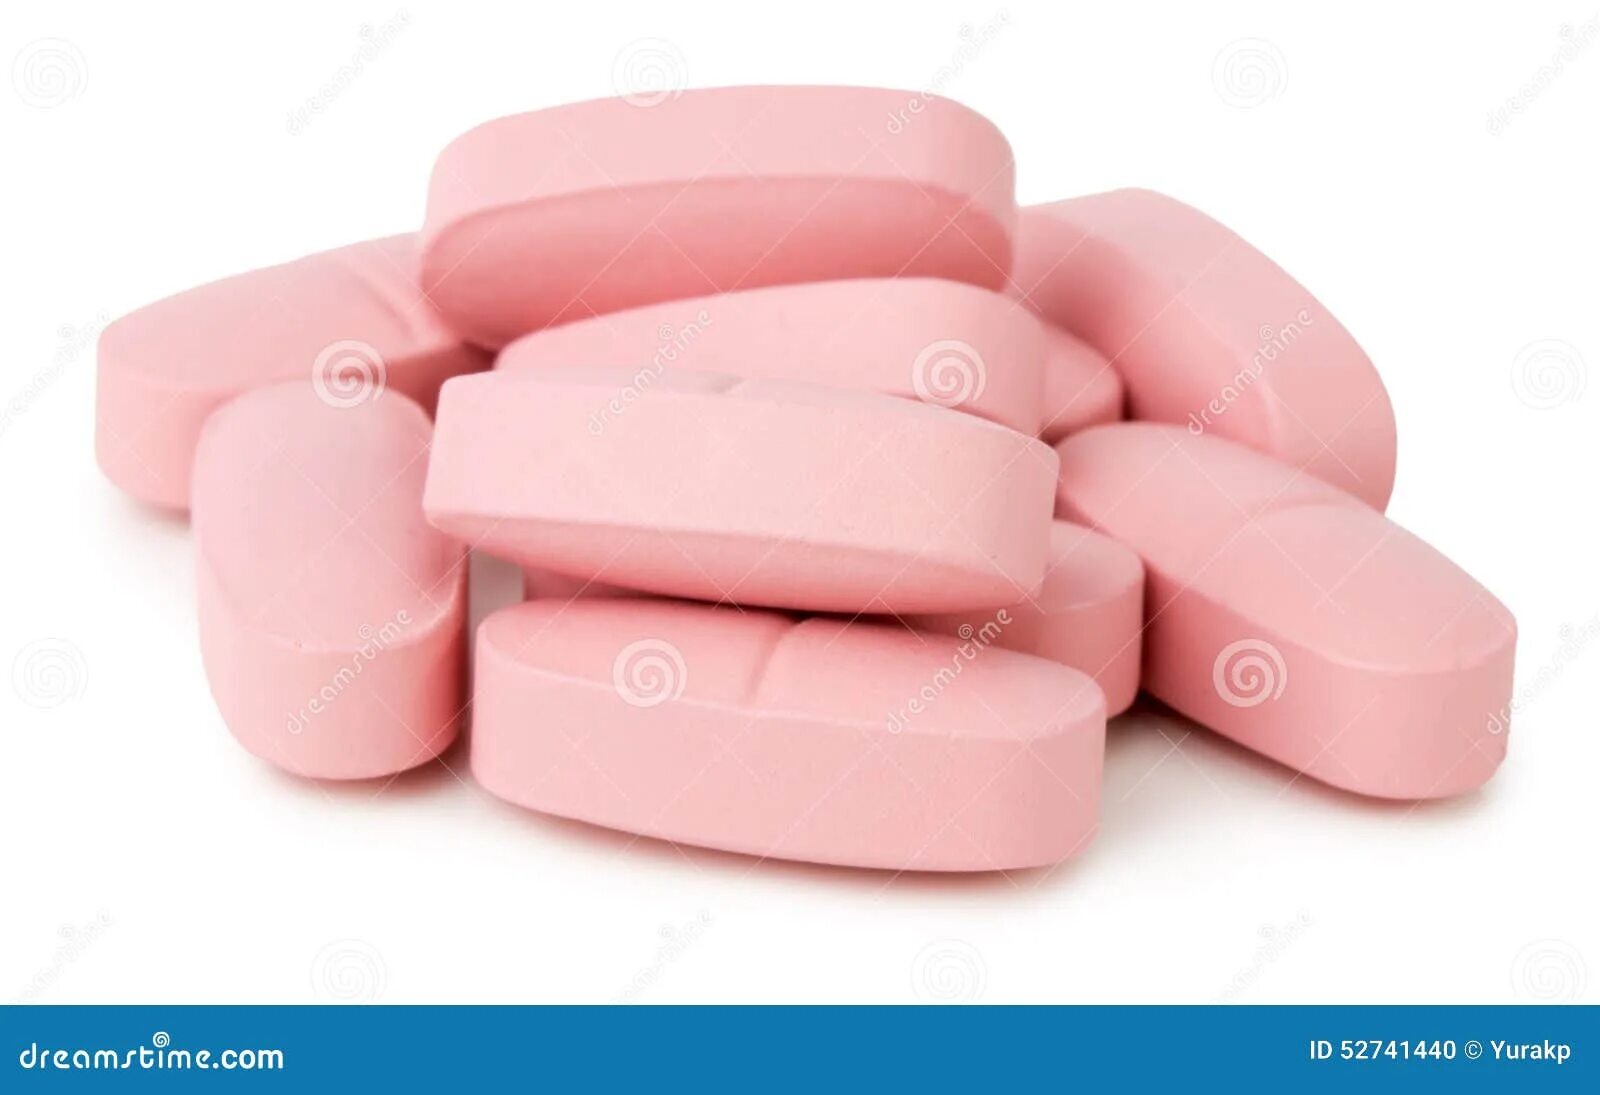 Розовая упаковка таблетки. Розовые таблетки. Таблетки розового цвета. Большая розовая таблетка. Розовые плоские таблетки.